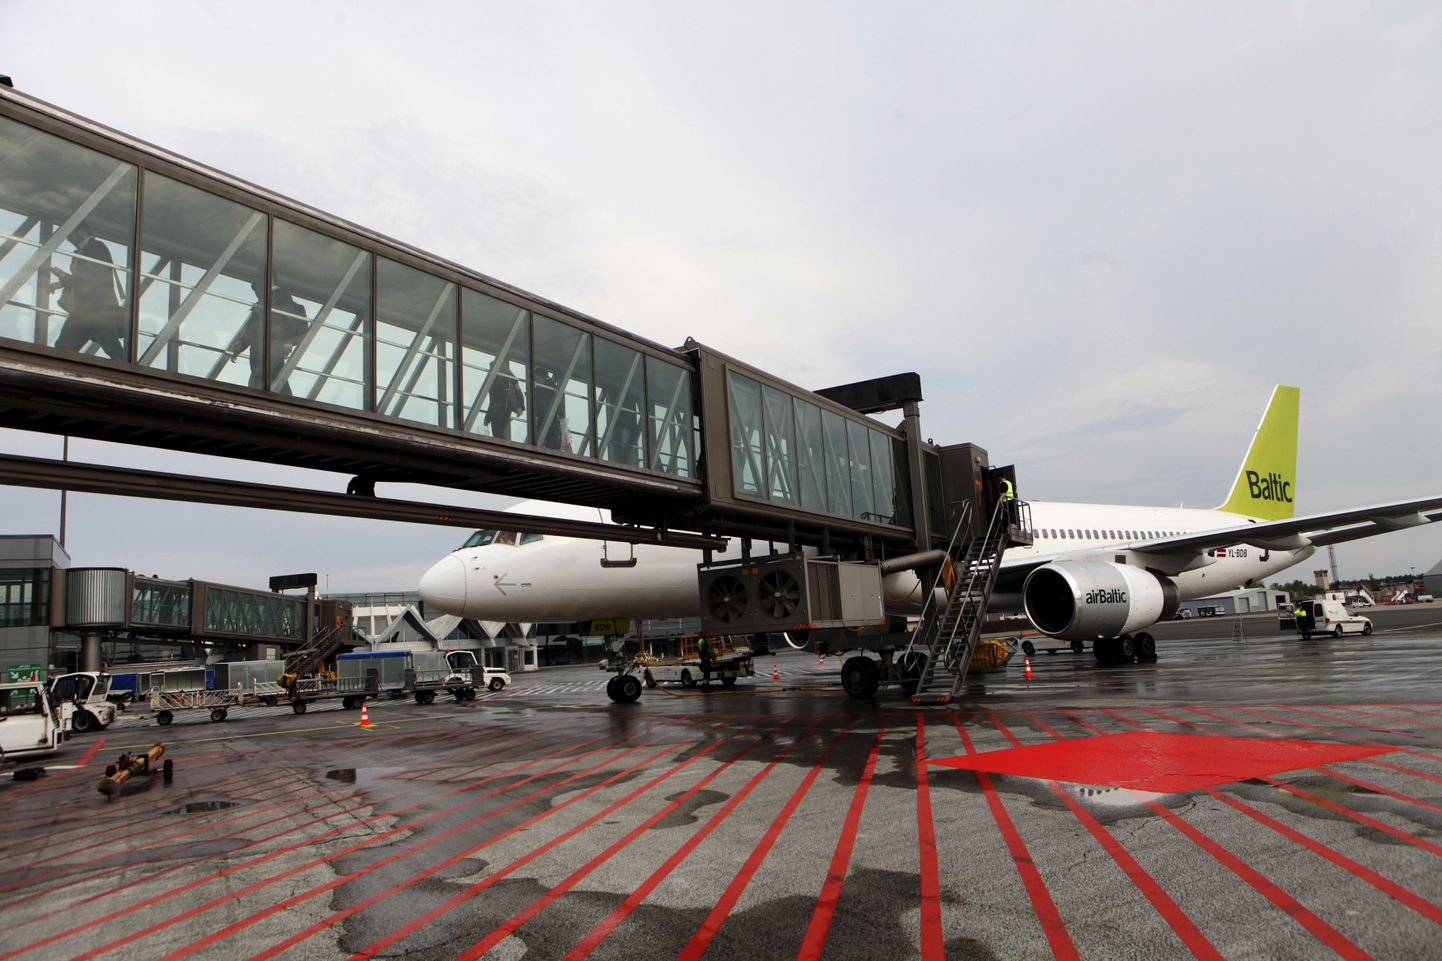 AirBalticu lennuk Riia lennujaamas.